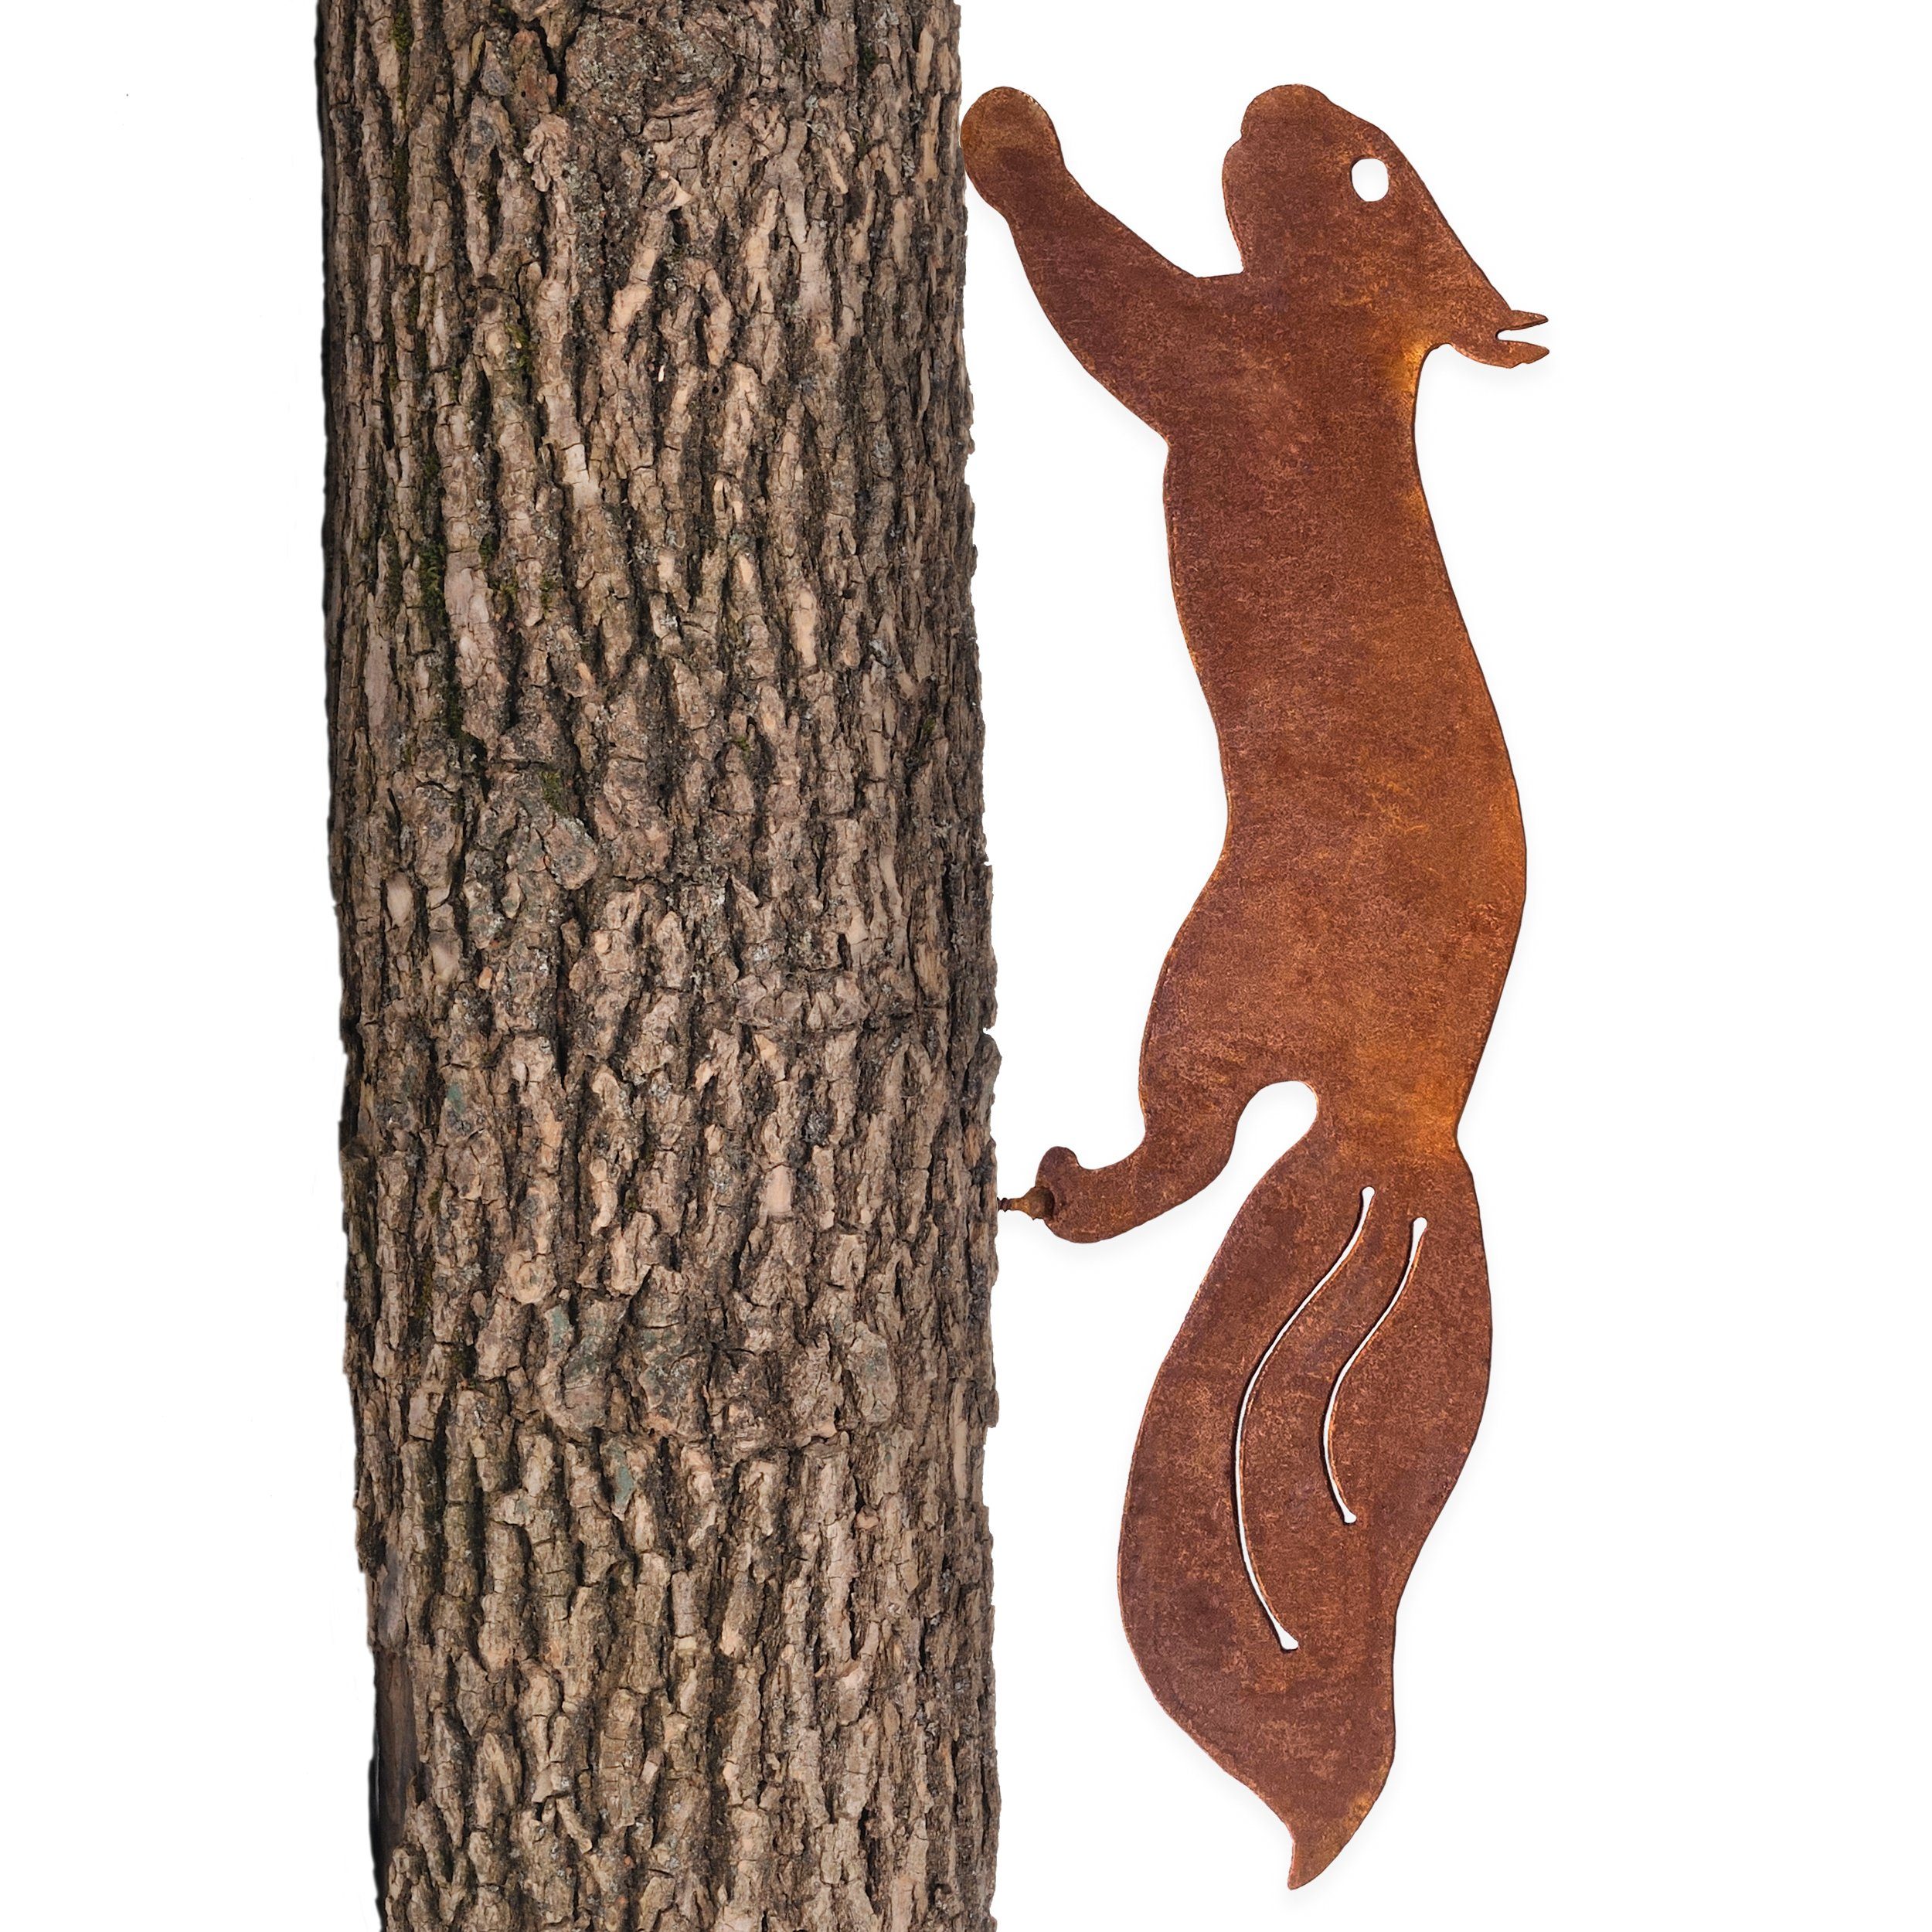 Glaskönig Gartenstecker Rostiges Eichhörnchen rennend Baumstecker Edelrostdeko H.15cm x L.42cm Metall Roststecker 2mm dick für den Außenbereich - Handarbeit